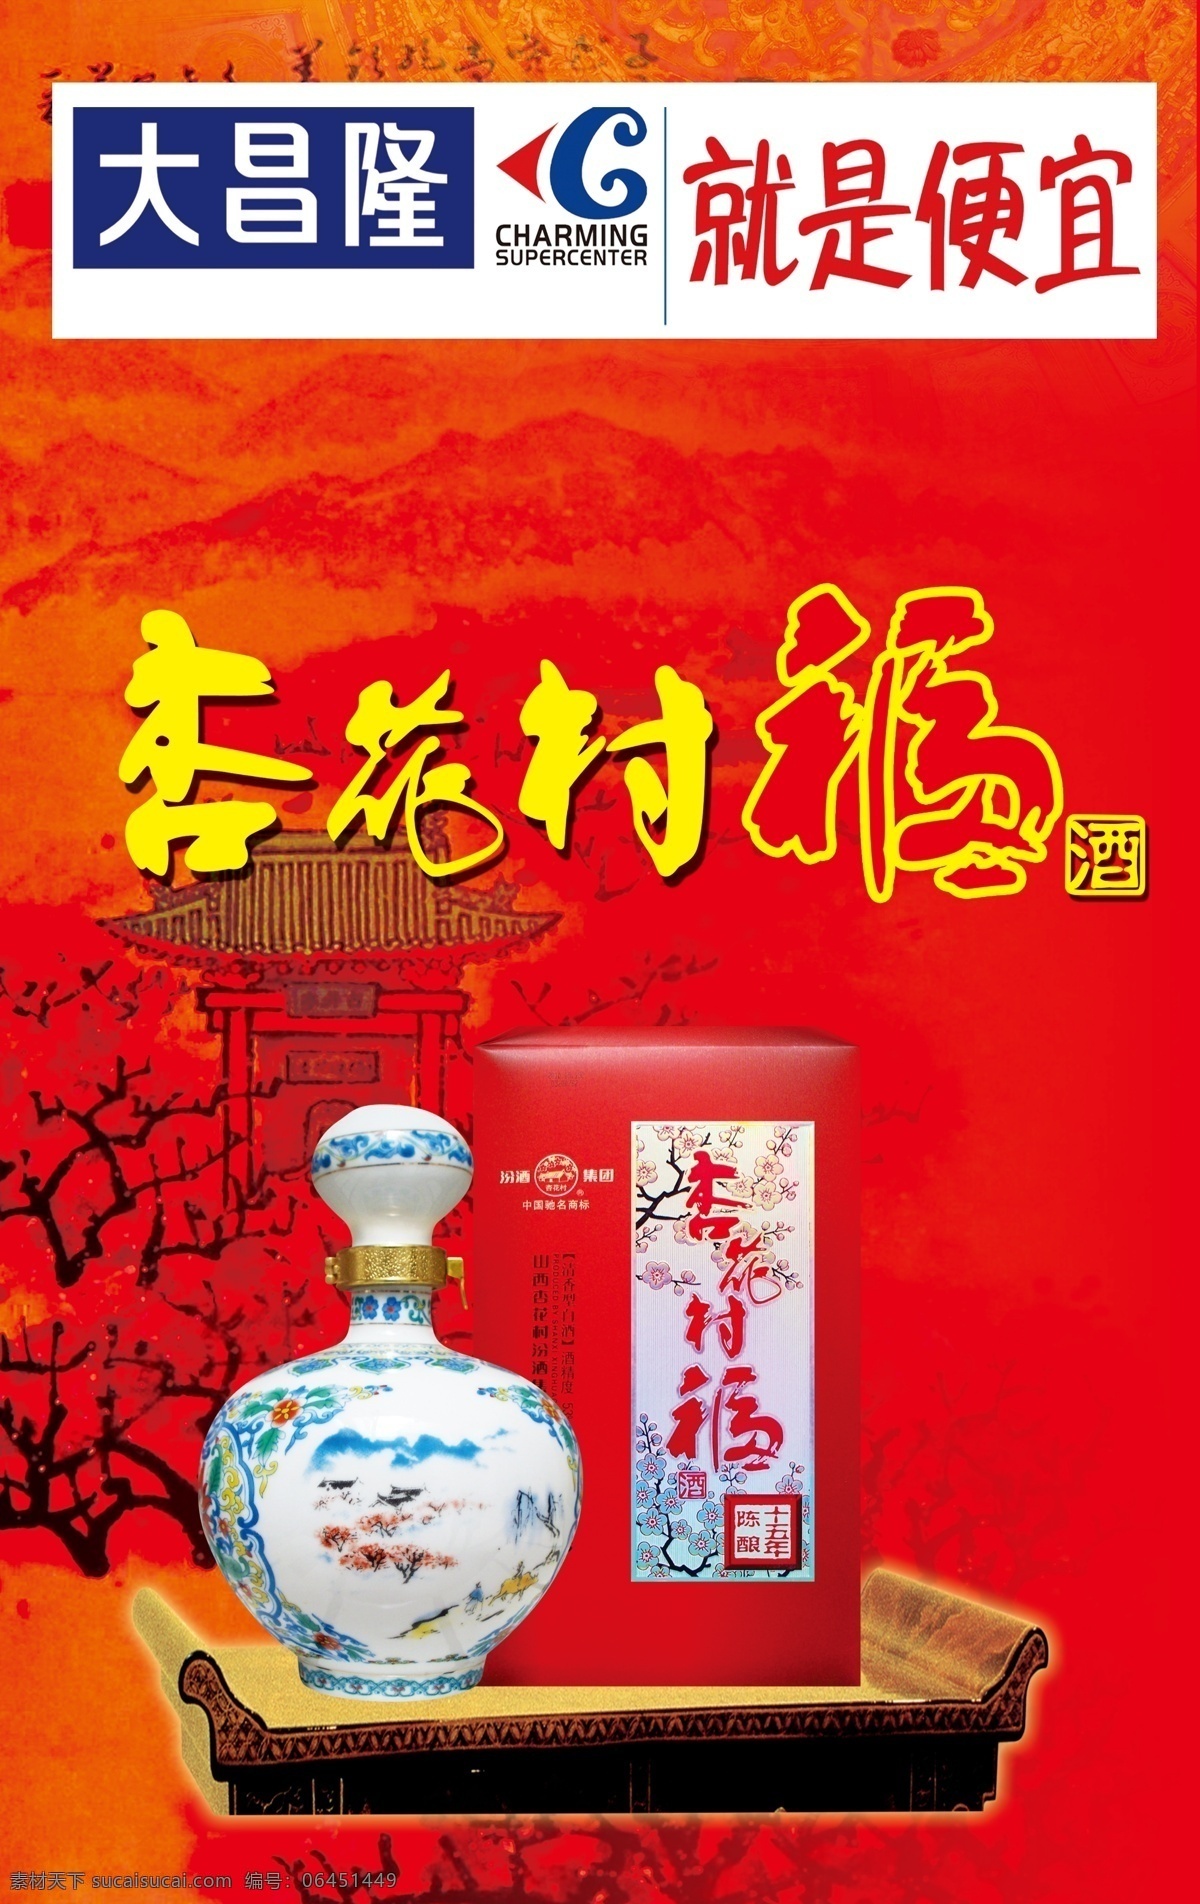 杏花村 福 酒 超市海报 广告设计模板 源文件 模板下载 杏花村福酒 其他海报设计